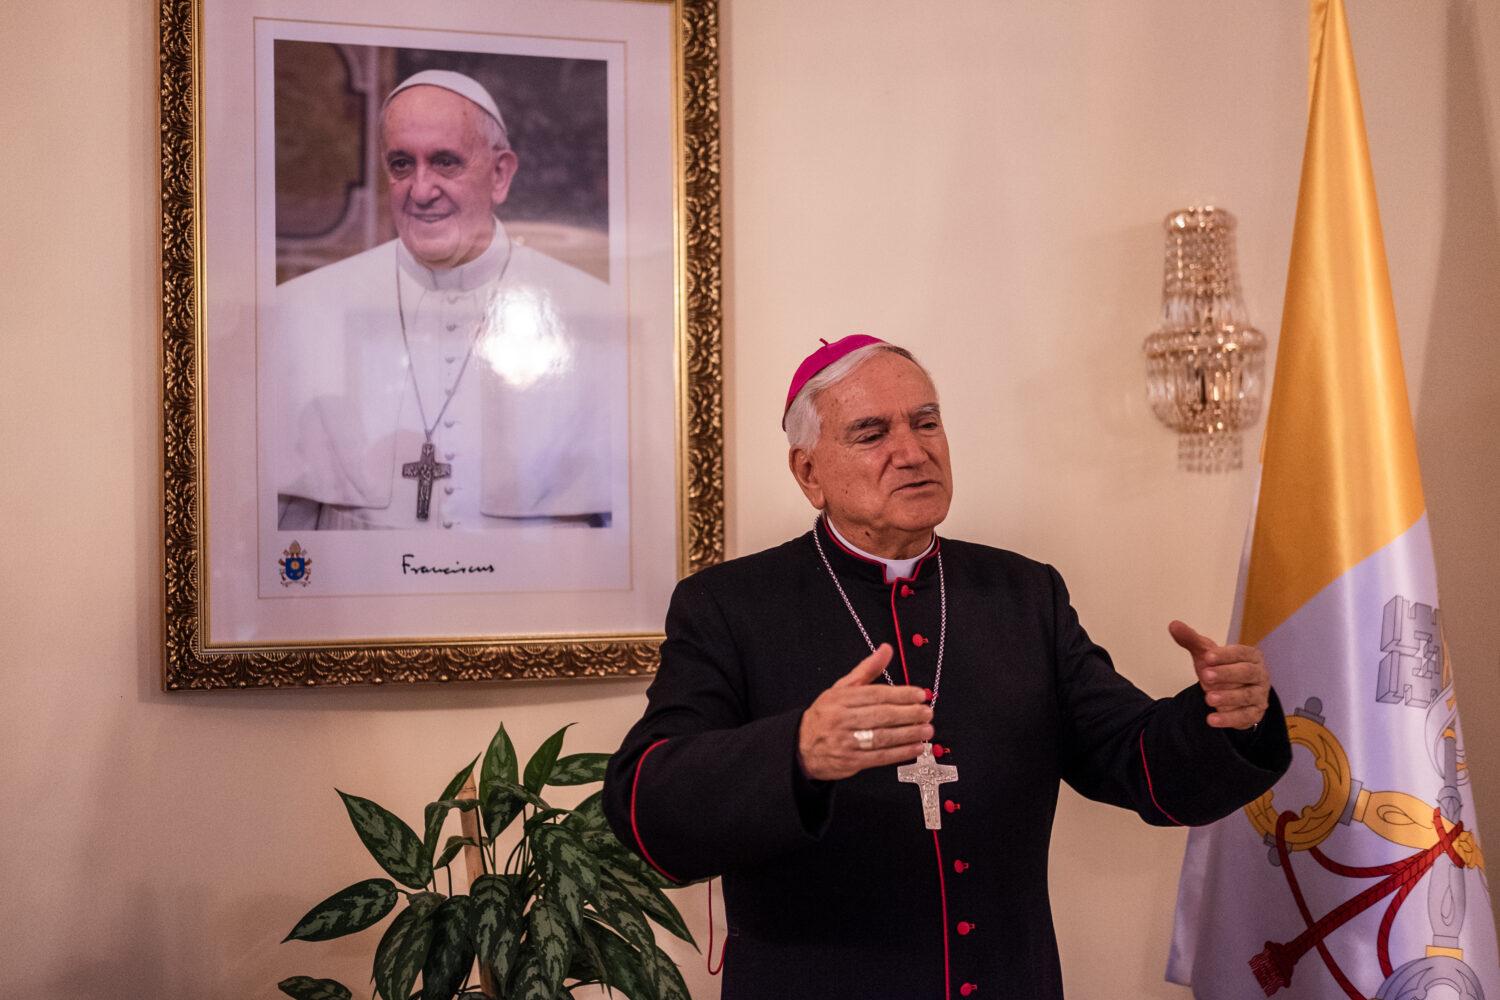 Apoštolský nuncius Nicola Girasoli: Modliť sa je dôležité, niekedy to však nestačí. Sú tu aj skutočné problémy ľudí